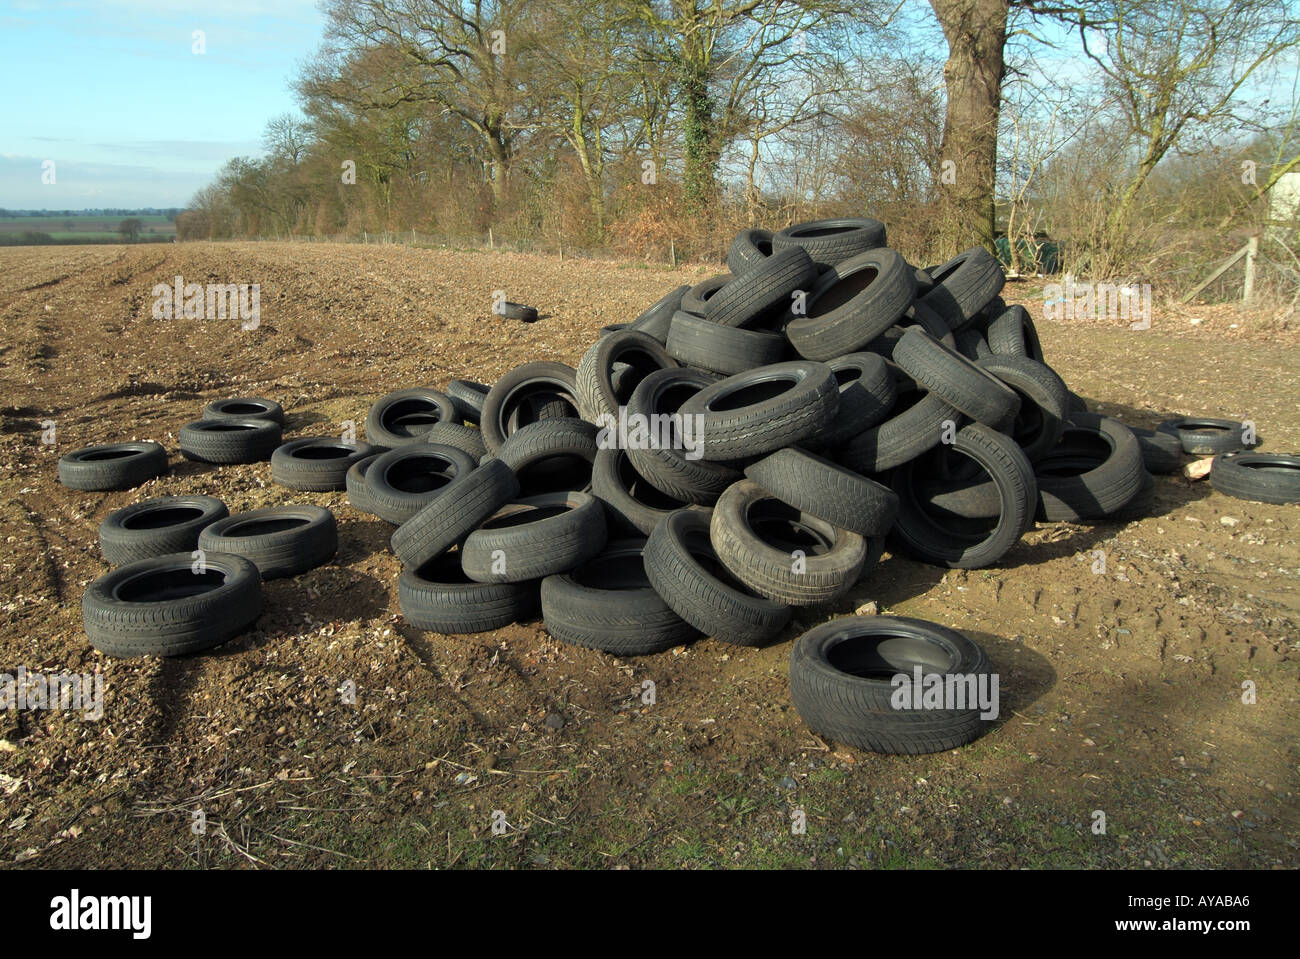 Basculement illégal des pneus de véhicules sous-évalués dans le champ agricole pour éviter de payer les frais d'élimination de la mouche gros problème dans la campagne Essex Engalnd Royaume-Uni Banque D'Images